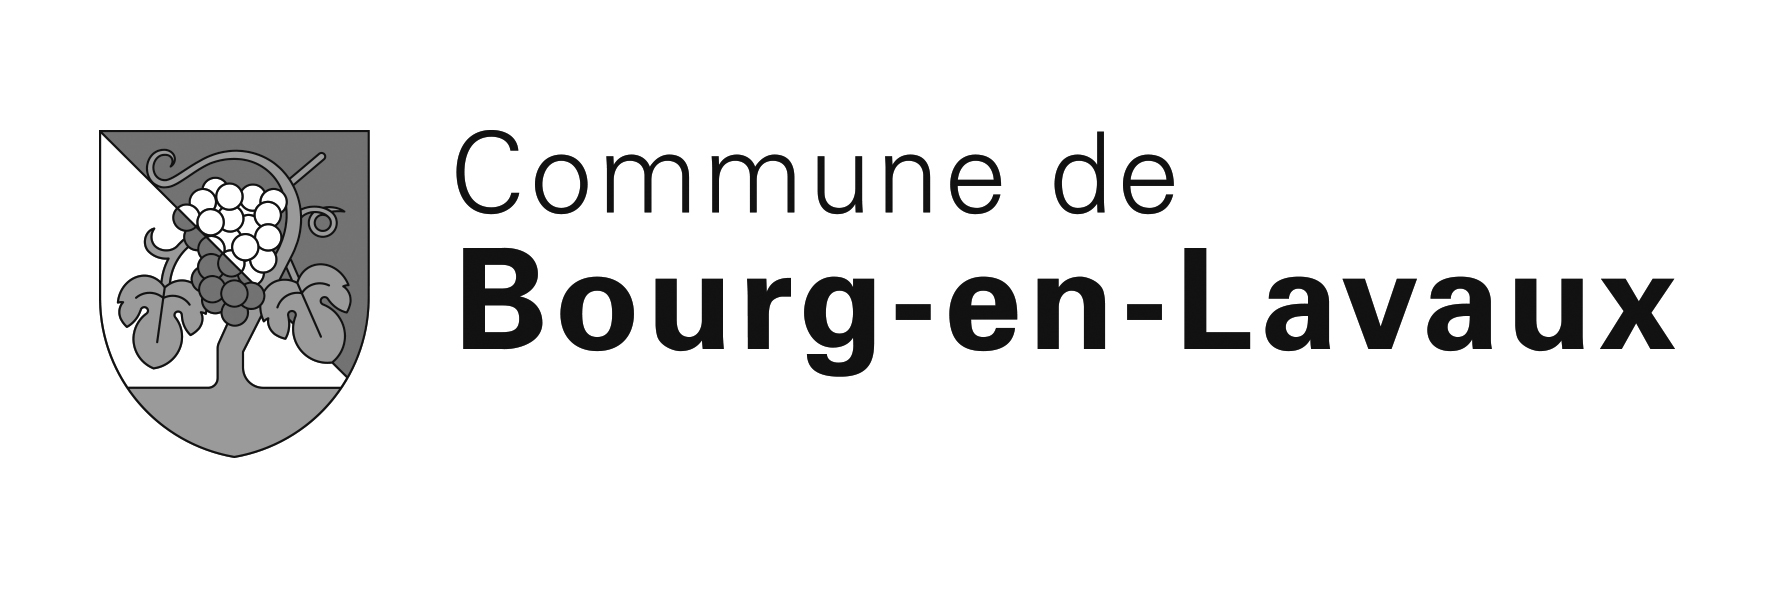 Commune de Bourg-en-Lavaux